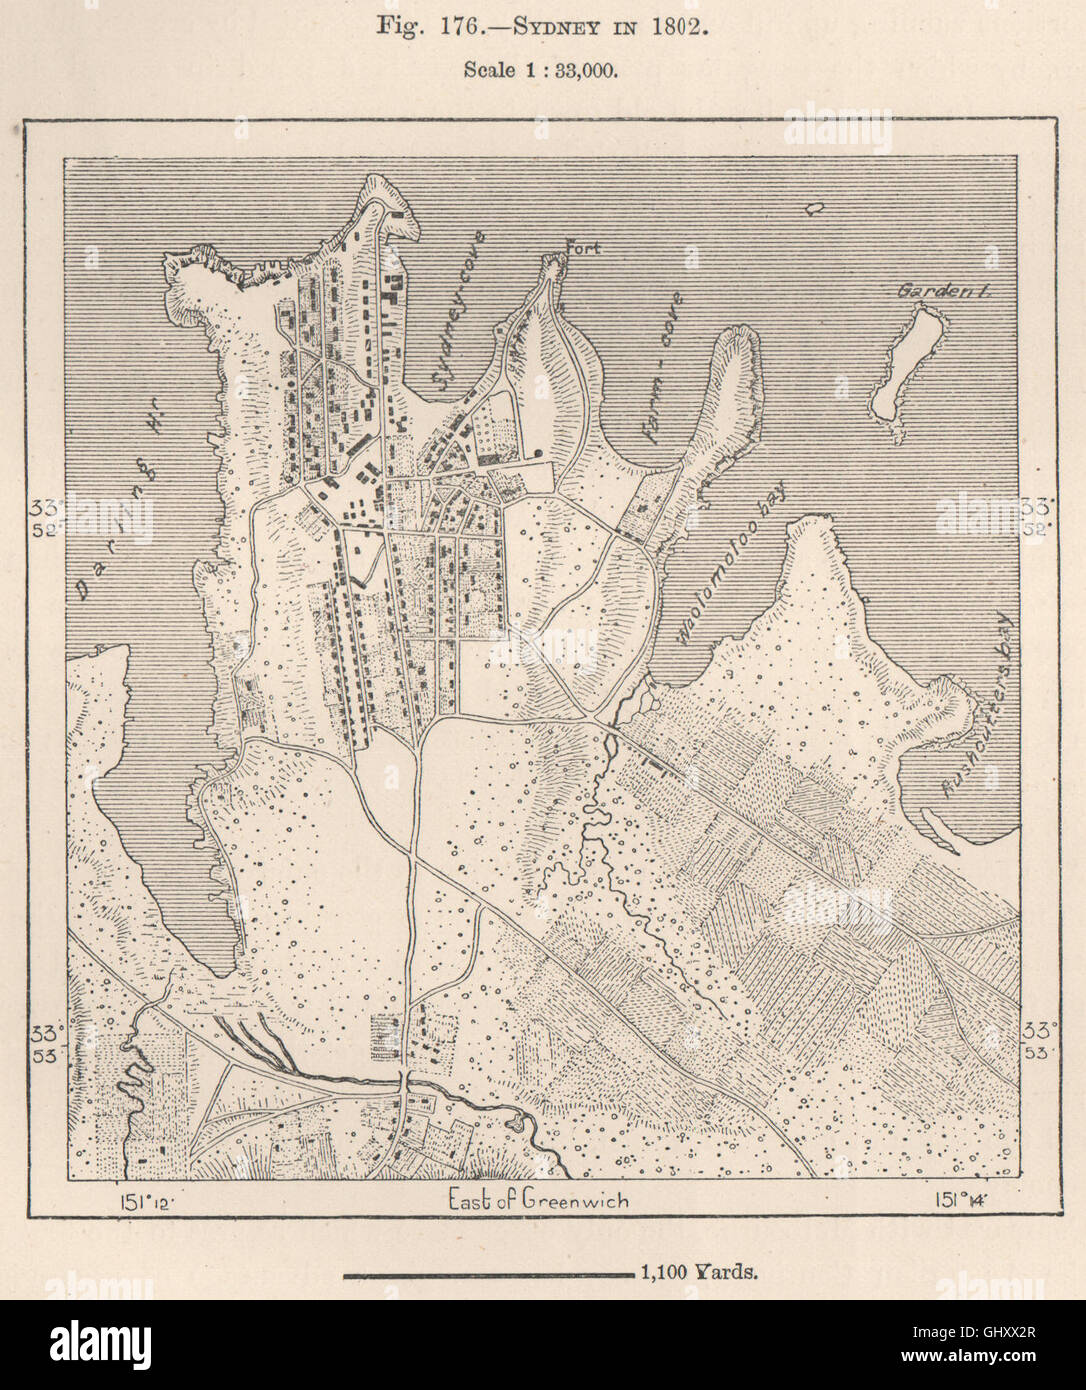 Sydney en 1802. Australia, 1885 mapa antiguo Foto de stock